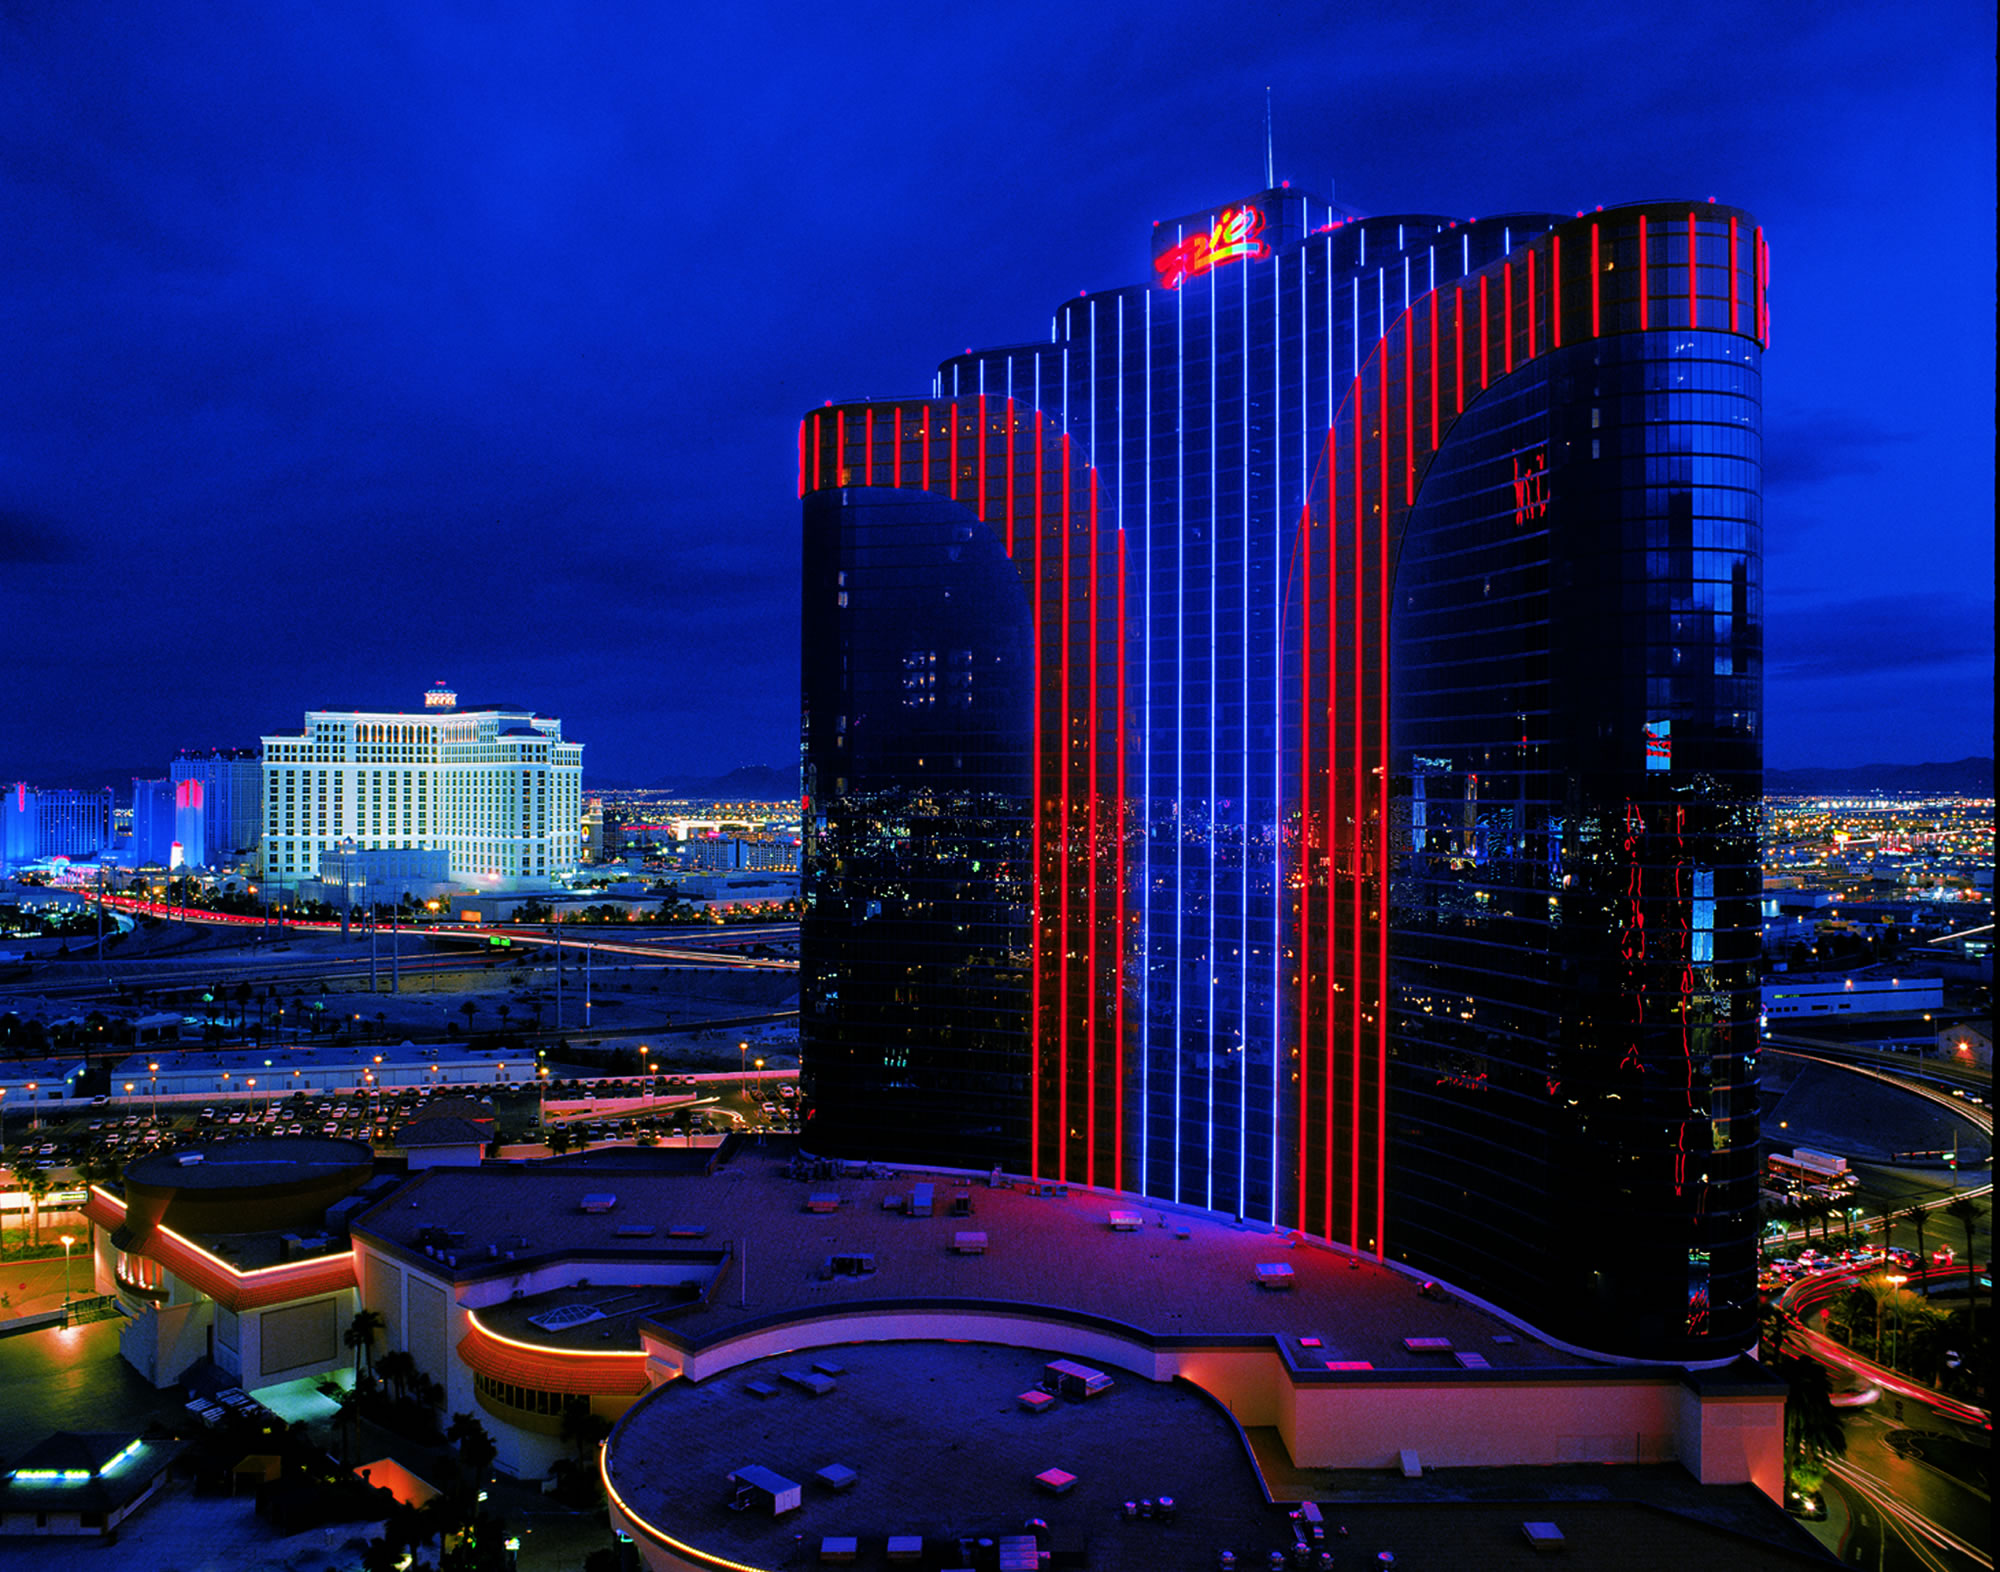 Rio Resort Las Vegas